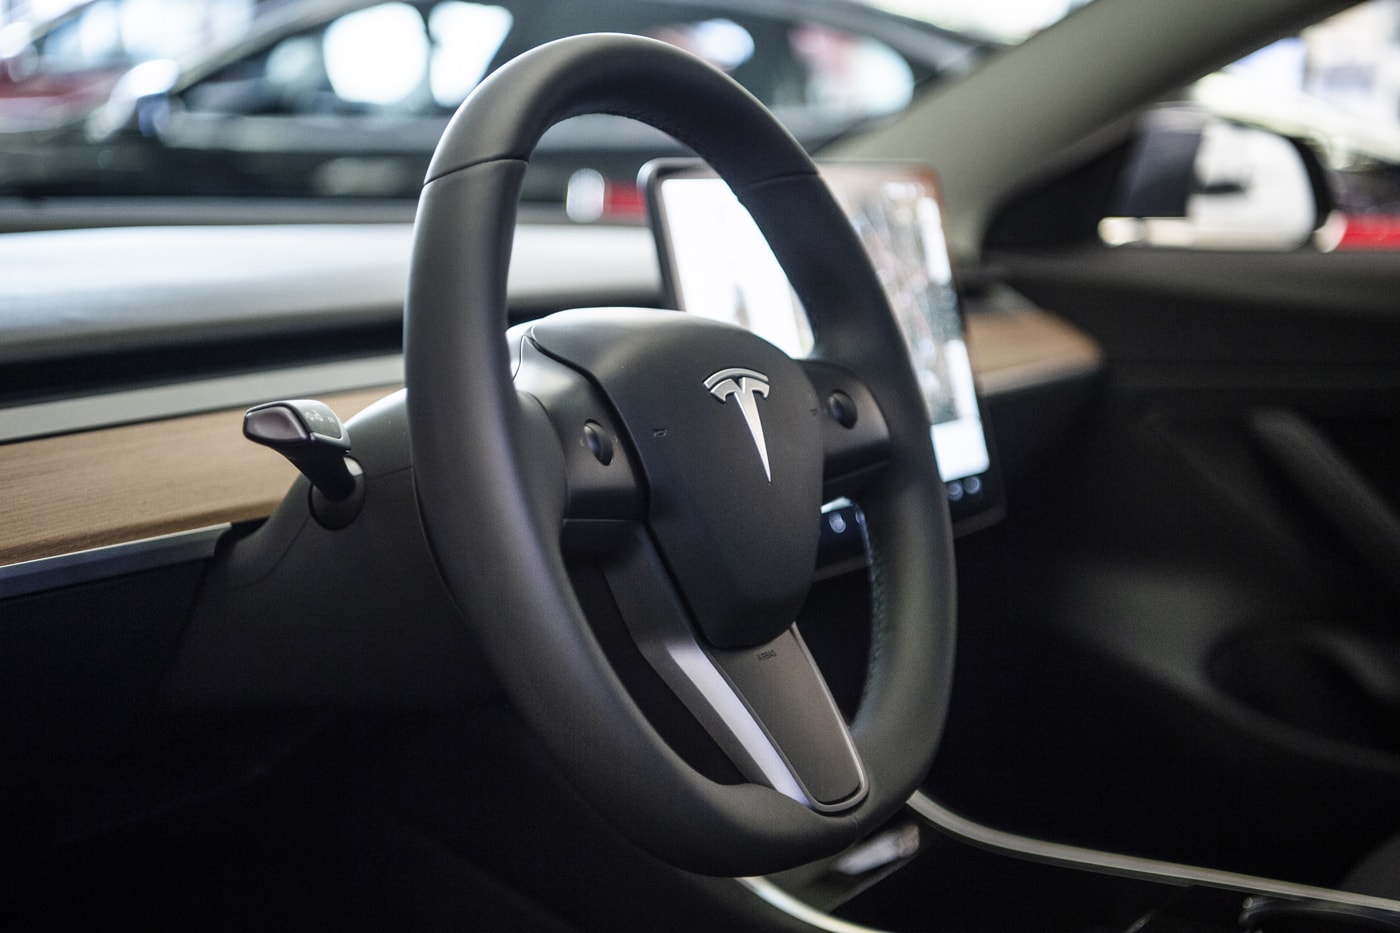 City Car Driving - Tesla Model Y [Steering wheel gameplay] 